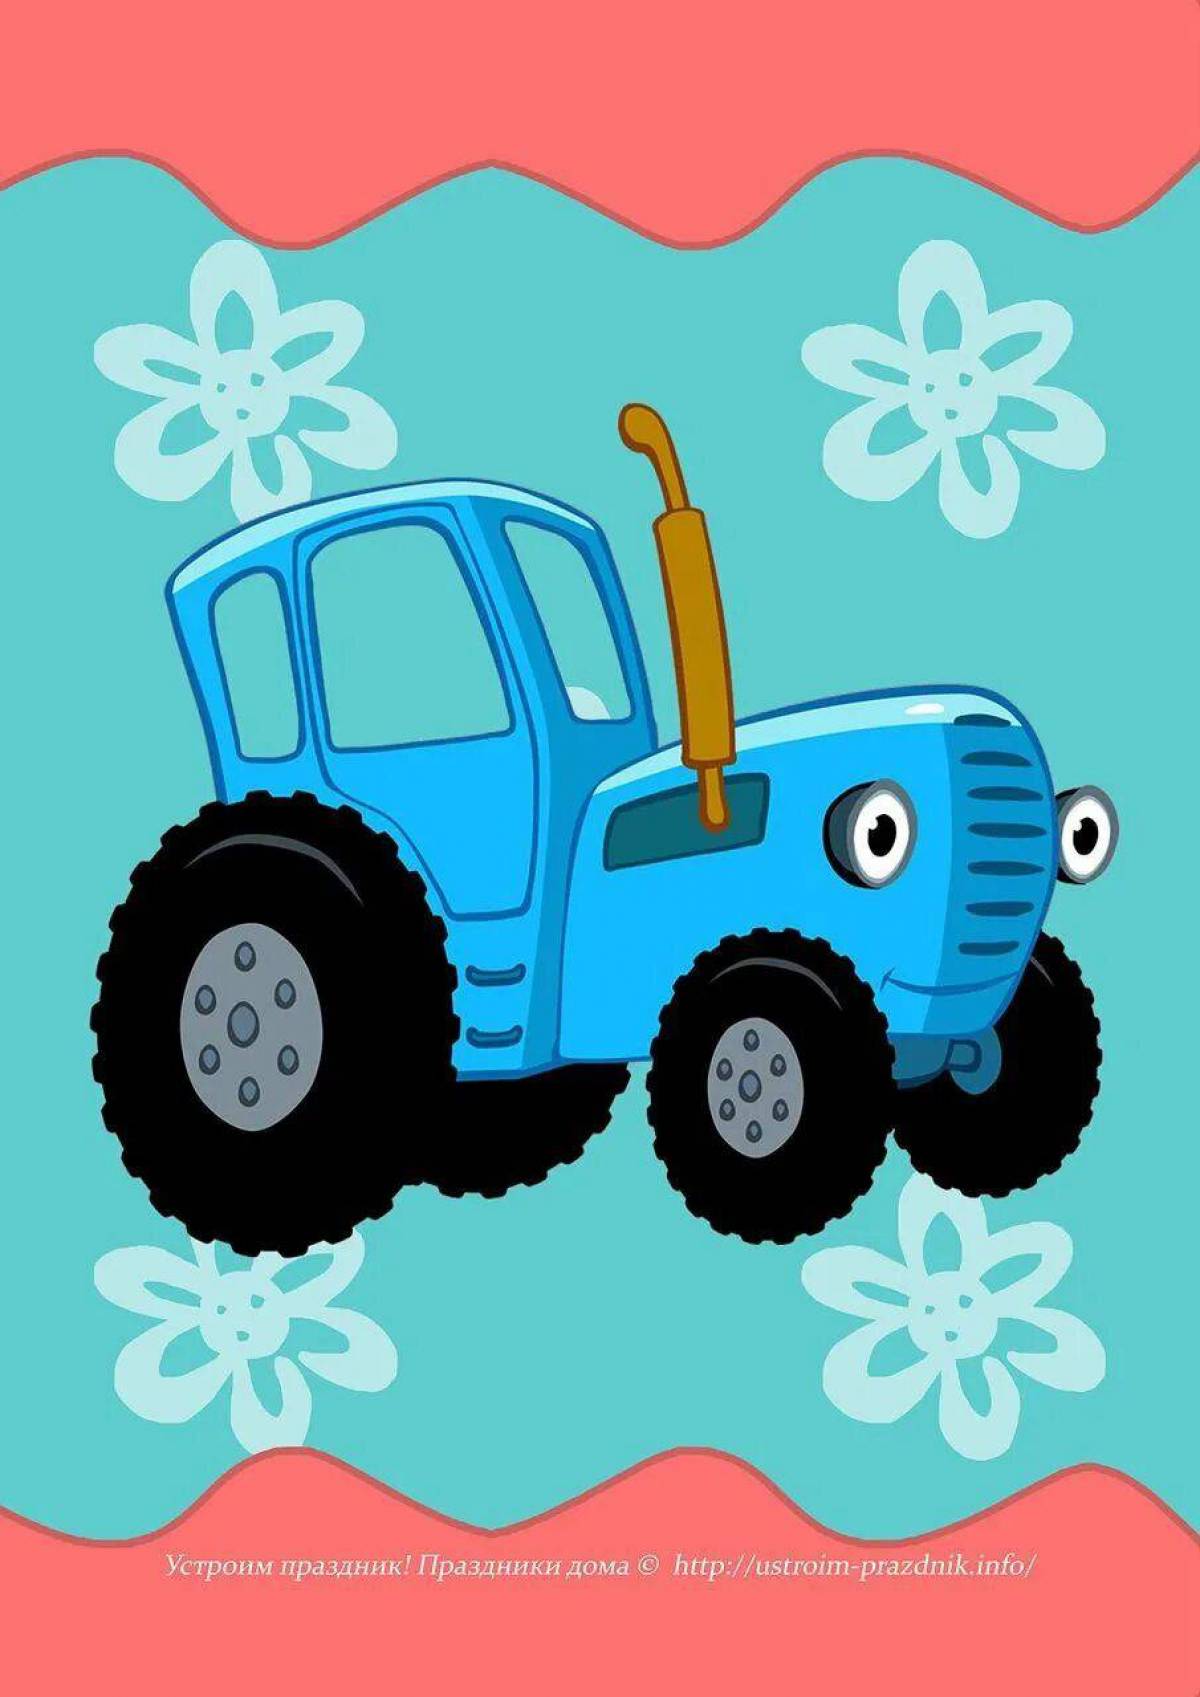 Синий трактор дел. Трактор ХТЗ синий. Синий трактор тр тр тр.